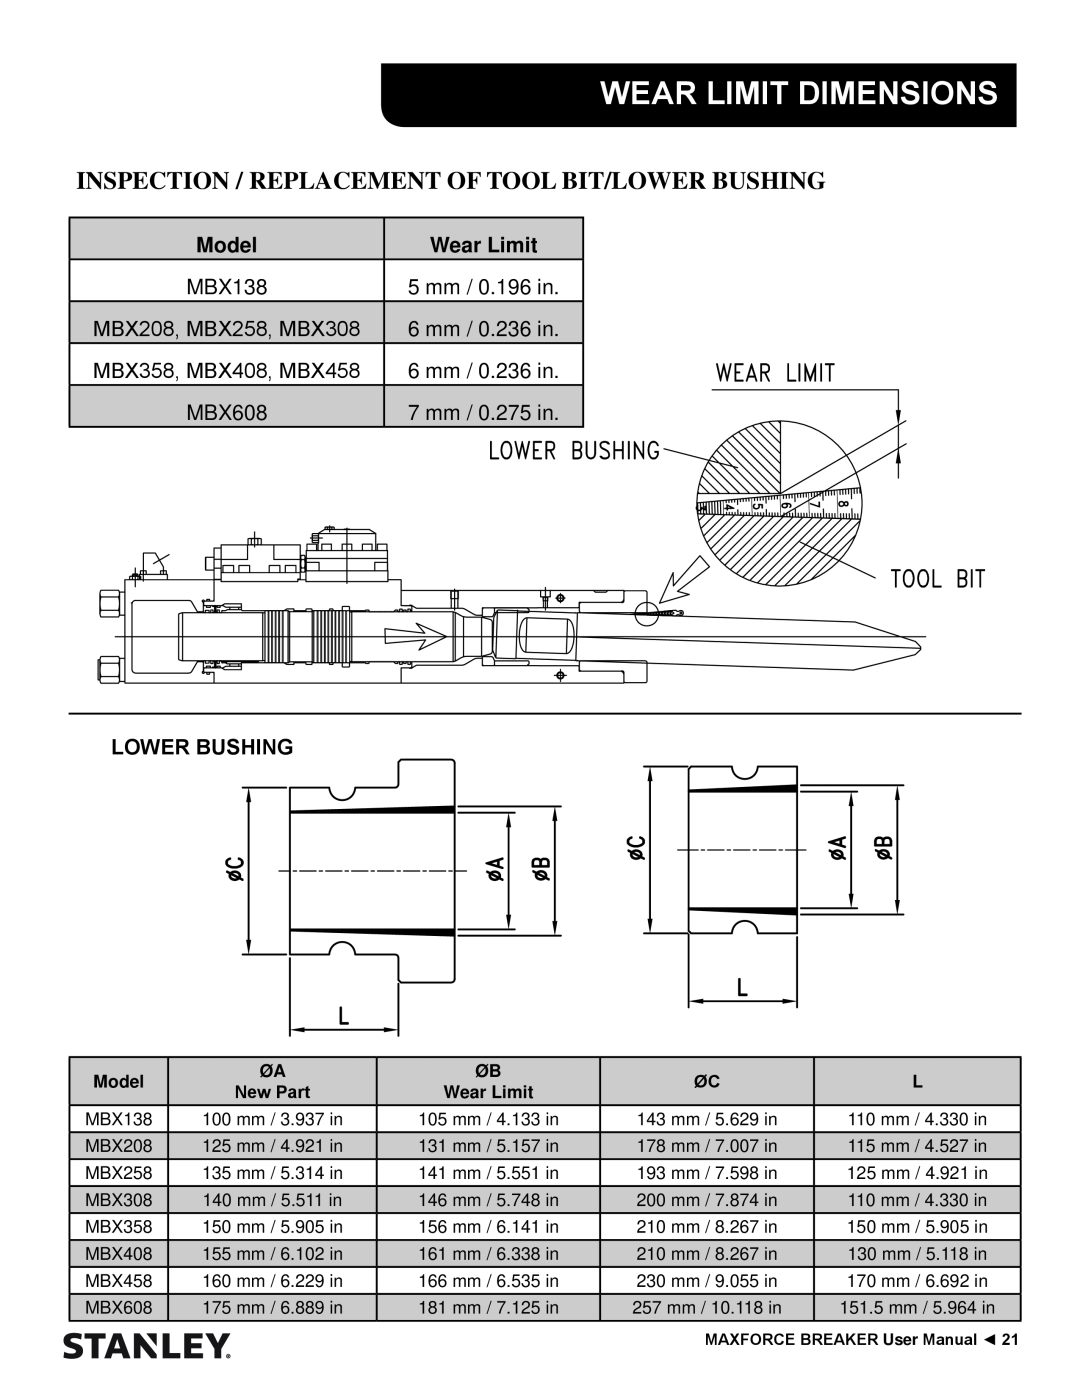 Stanley Black & Decker MBX138 thru MBX608 Wear Limit Dimensions, Model, Lower Bushing, 5 mm / 0.196 in, 6 mm / 0.236 in 